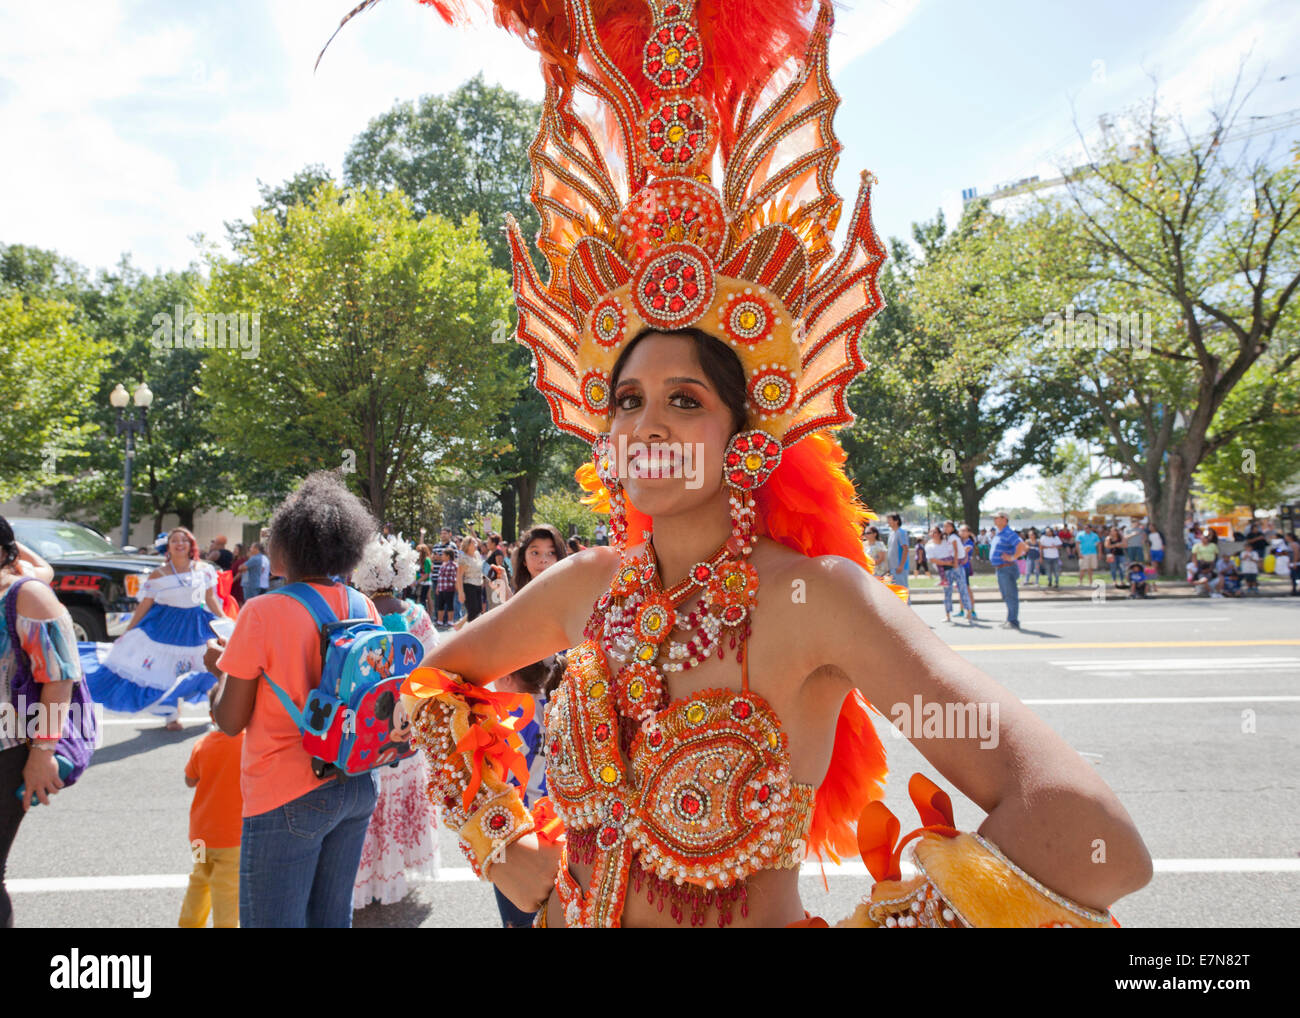 Hermosa mujer brasileña vestida con colorido disfraz de carnaval y bandera  de brasil durante el carnaval en la calle p